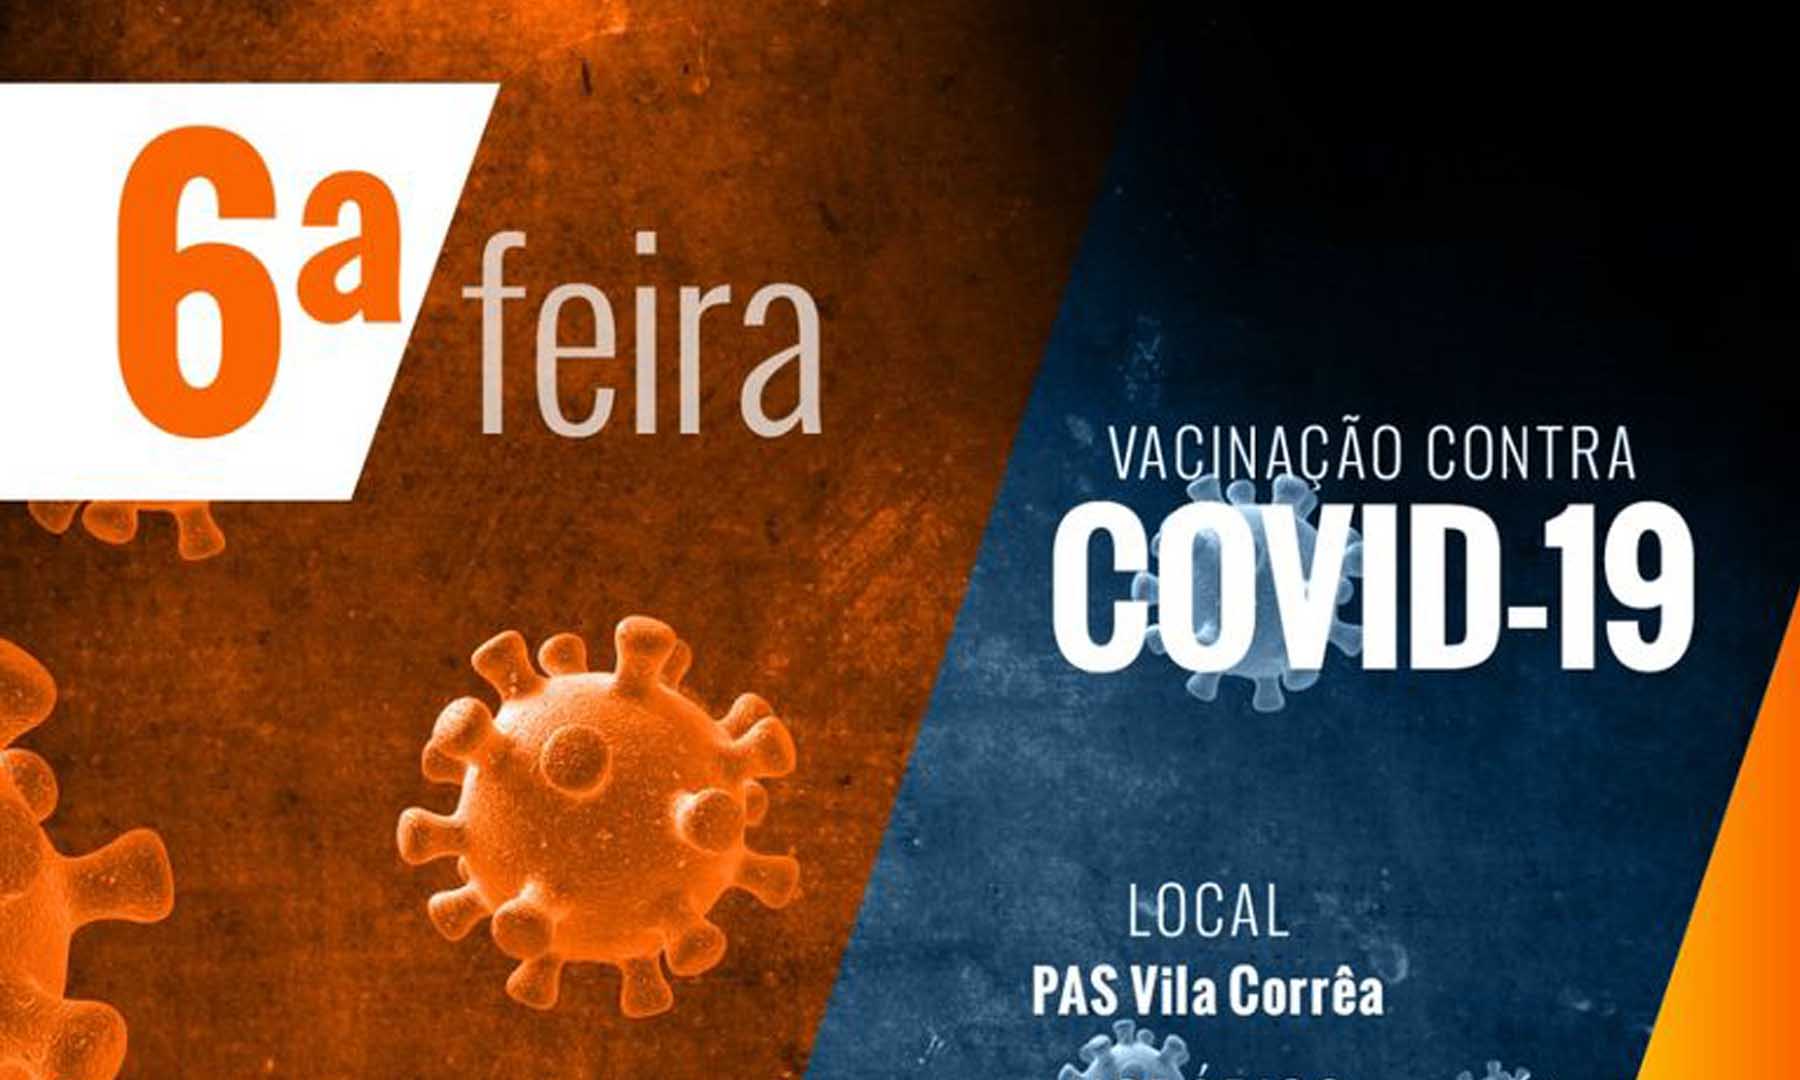 VACINAÇÃO COVID-19 - DIA 03 DE FEVEREIRO